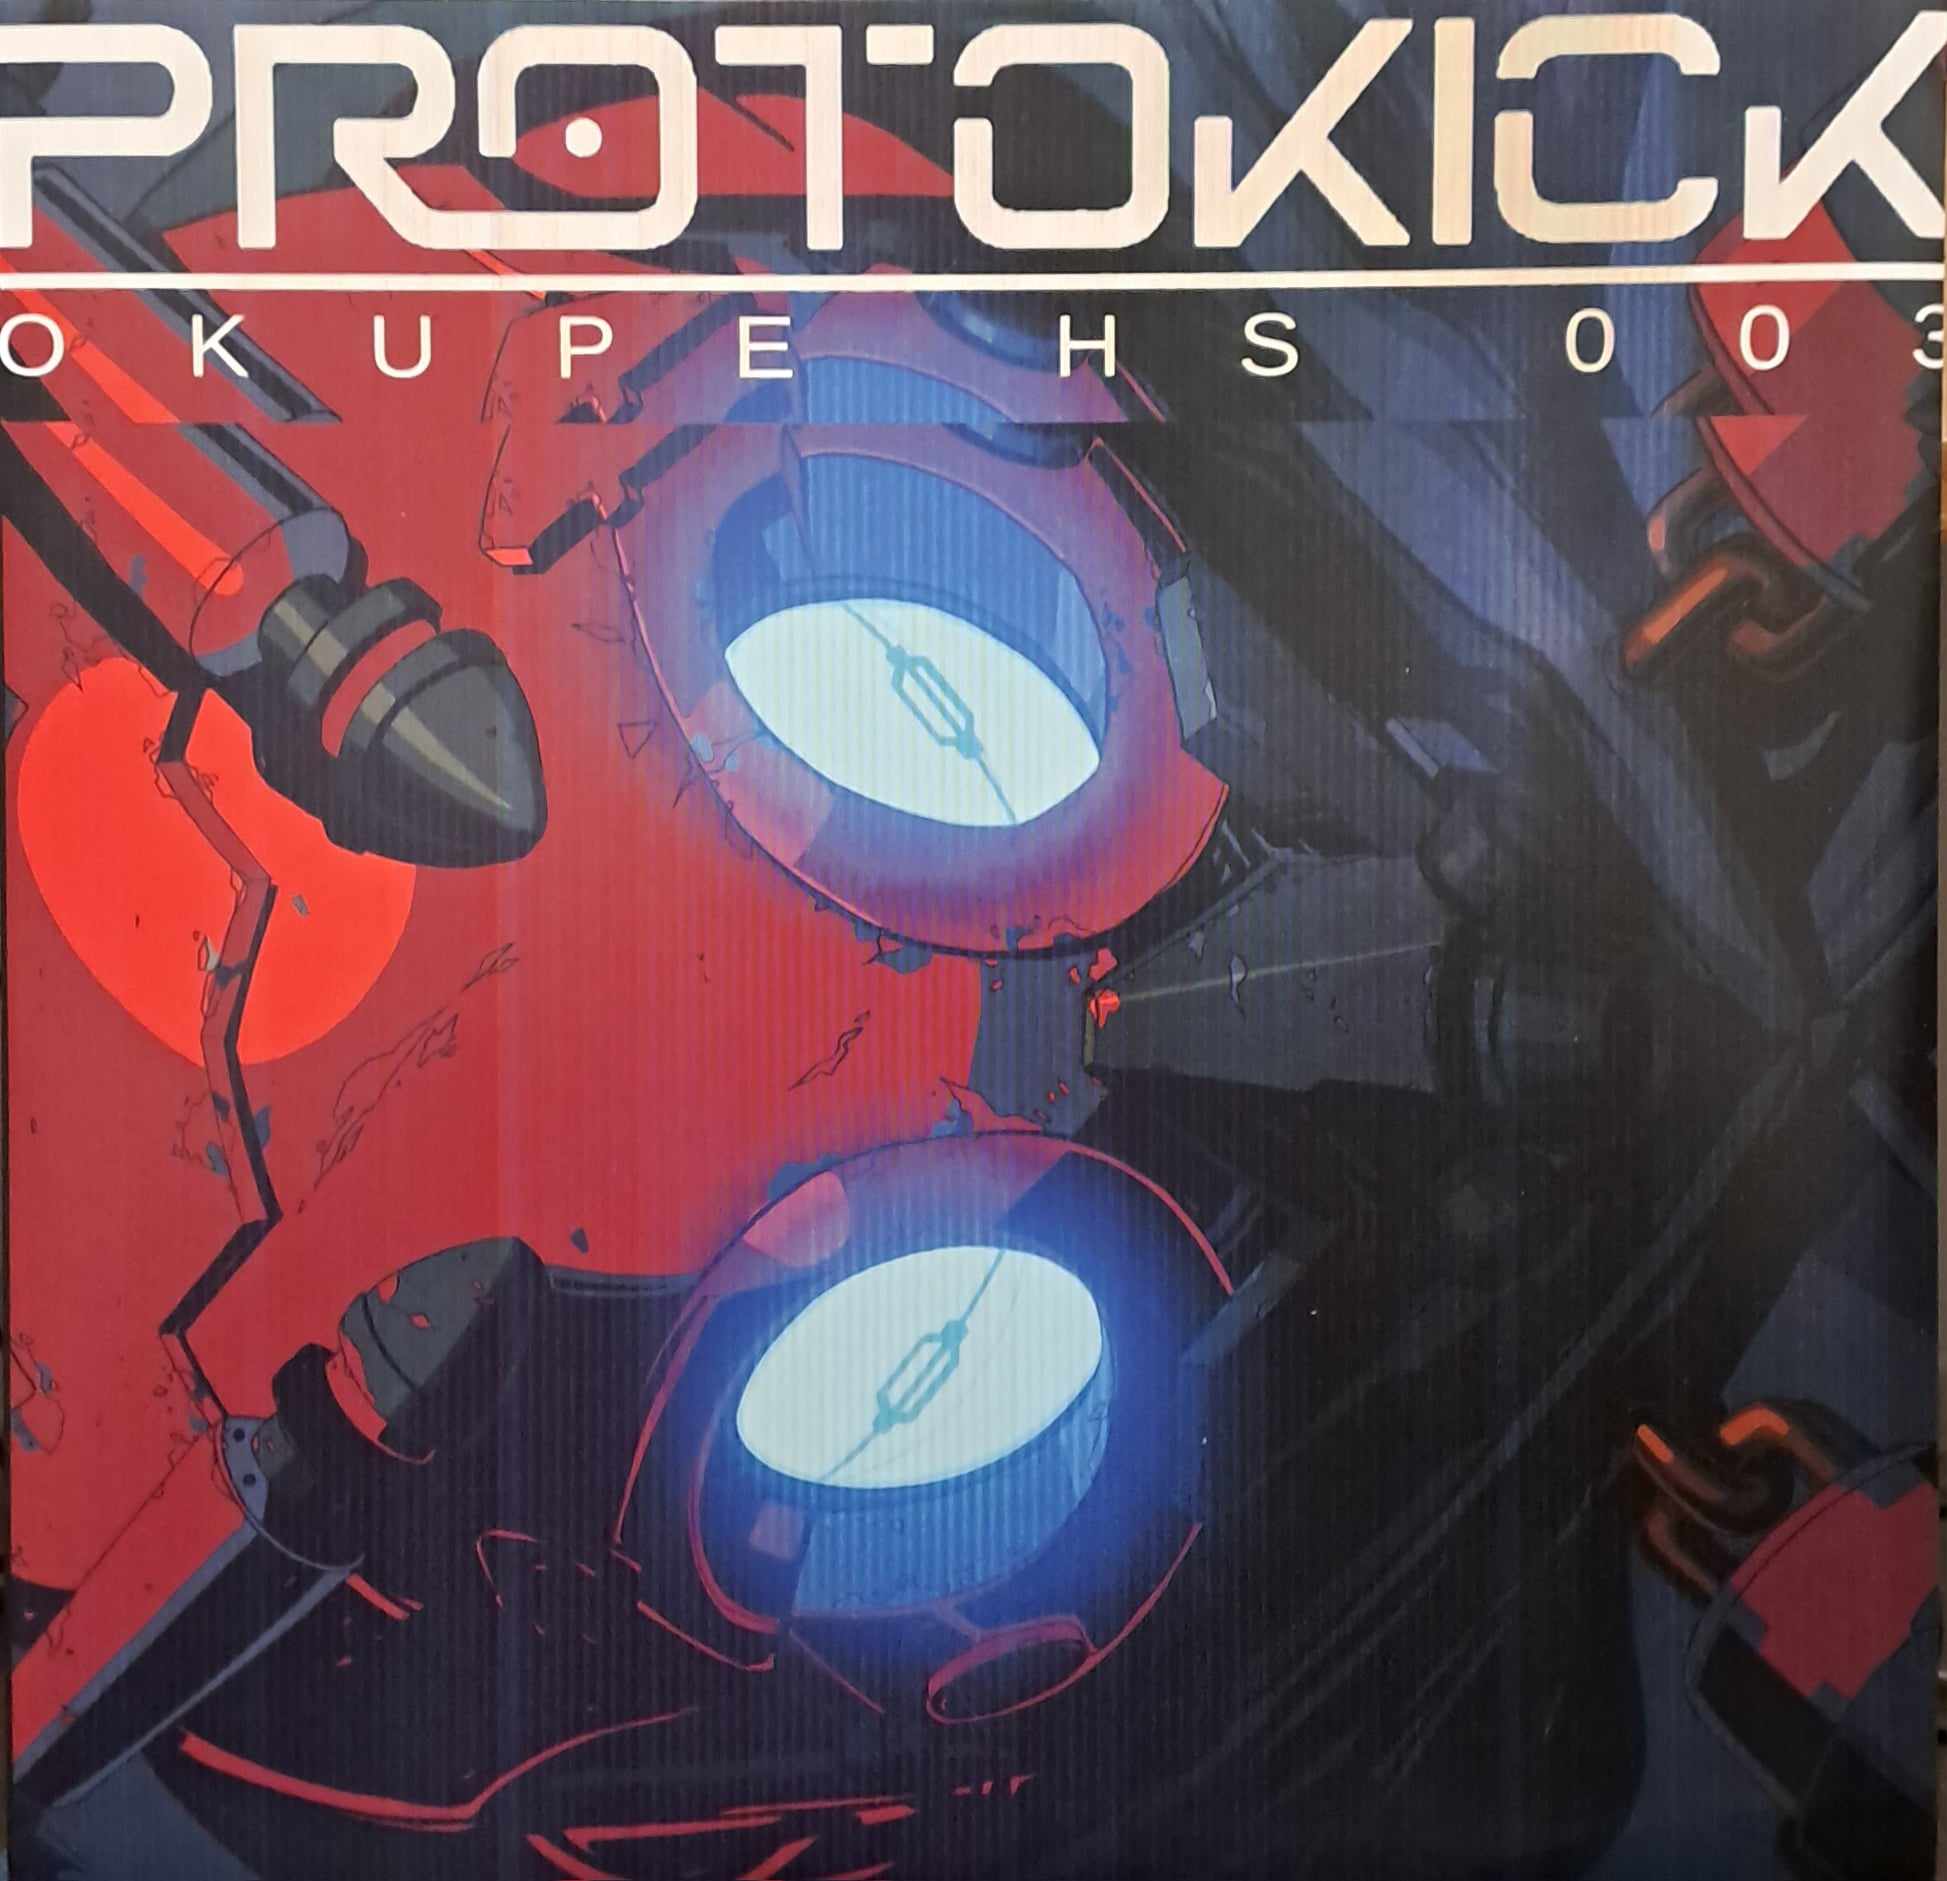 Okupe HS 03 (dernières copies en stock) - vinyle freetekno